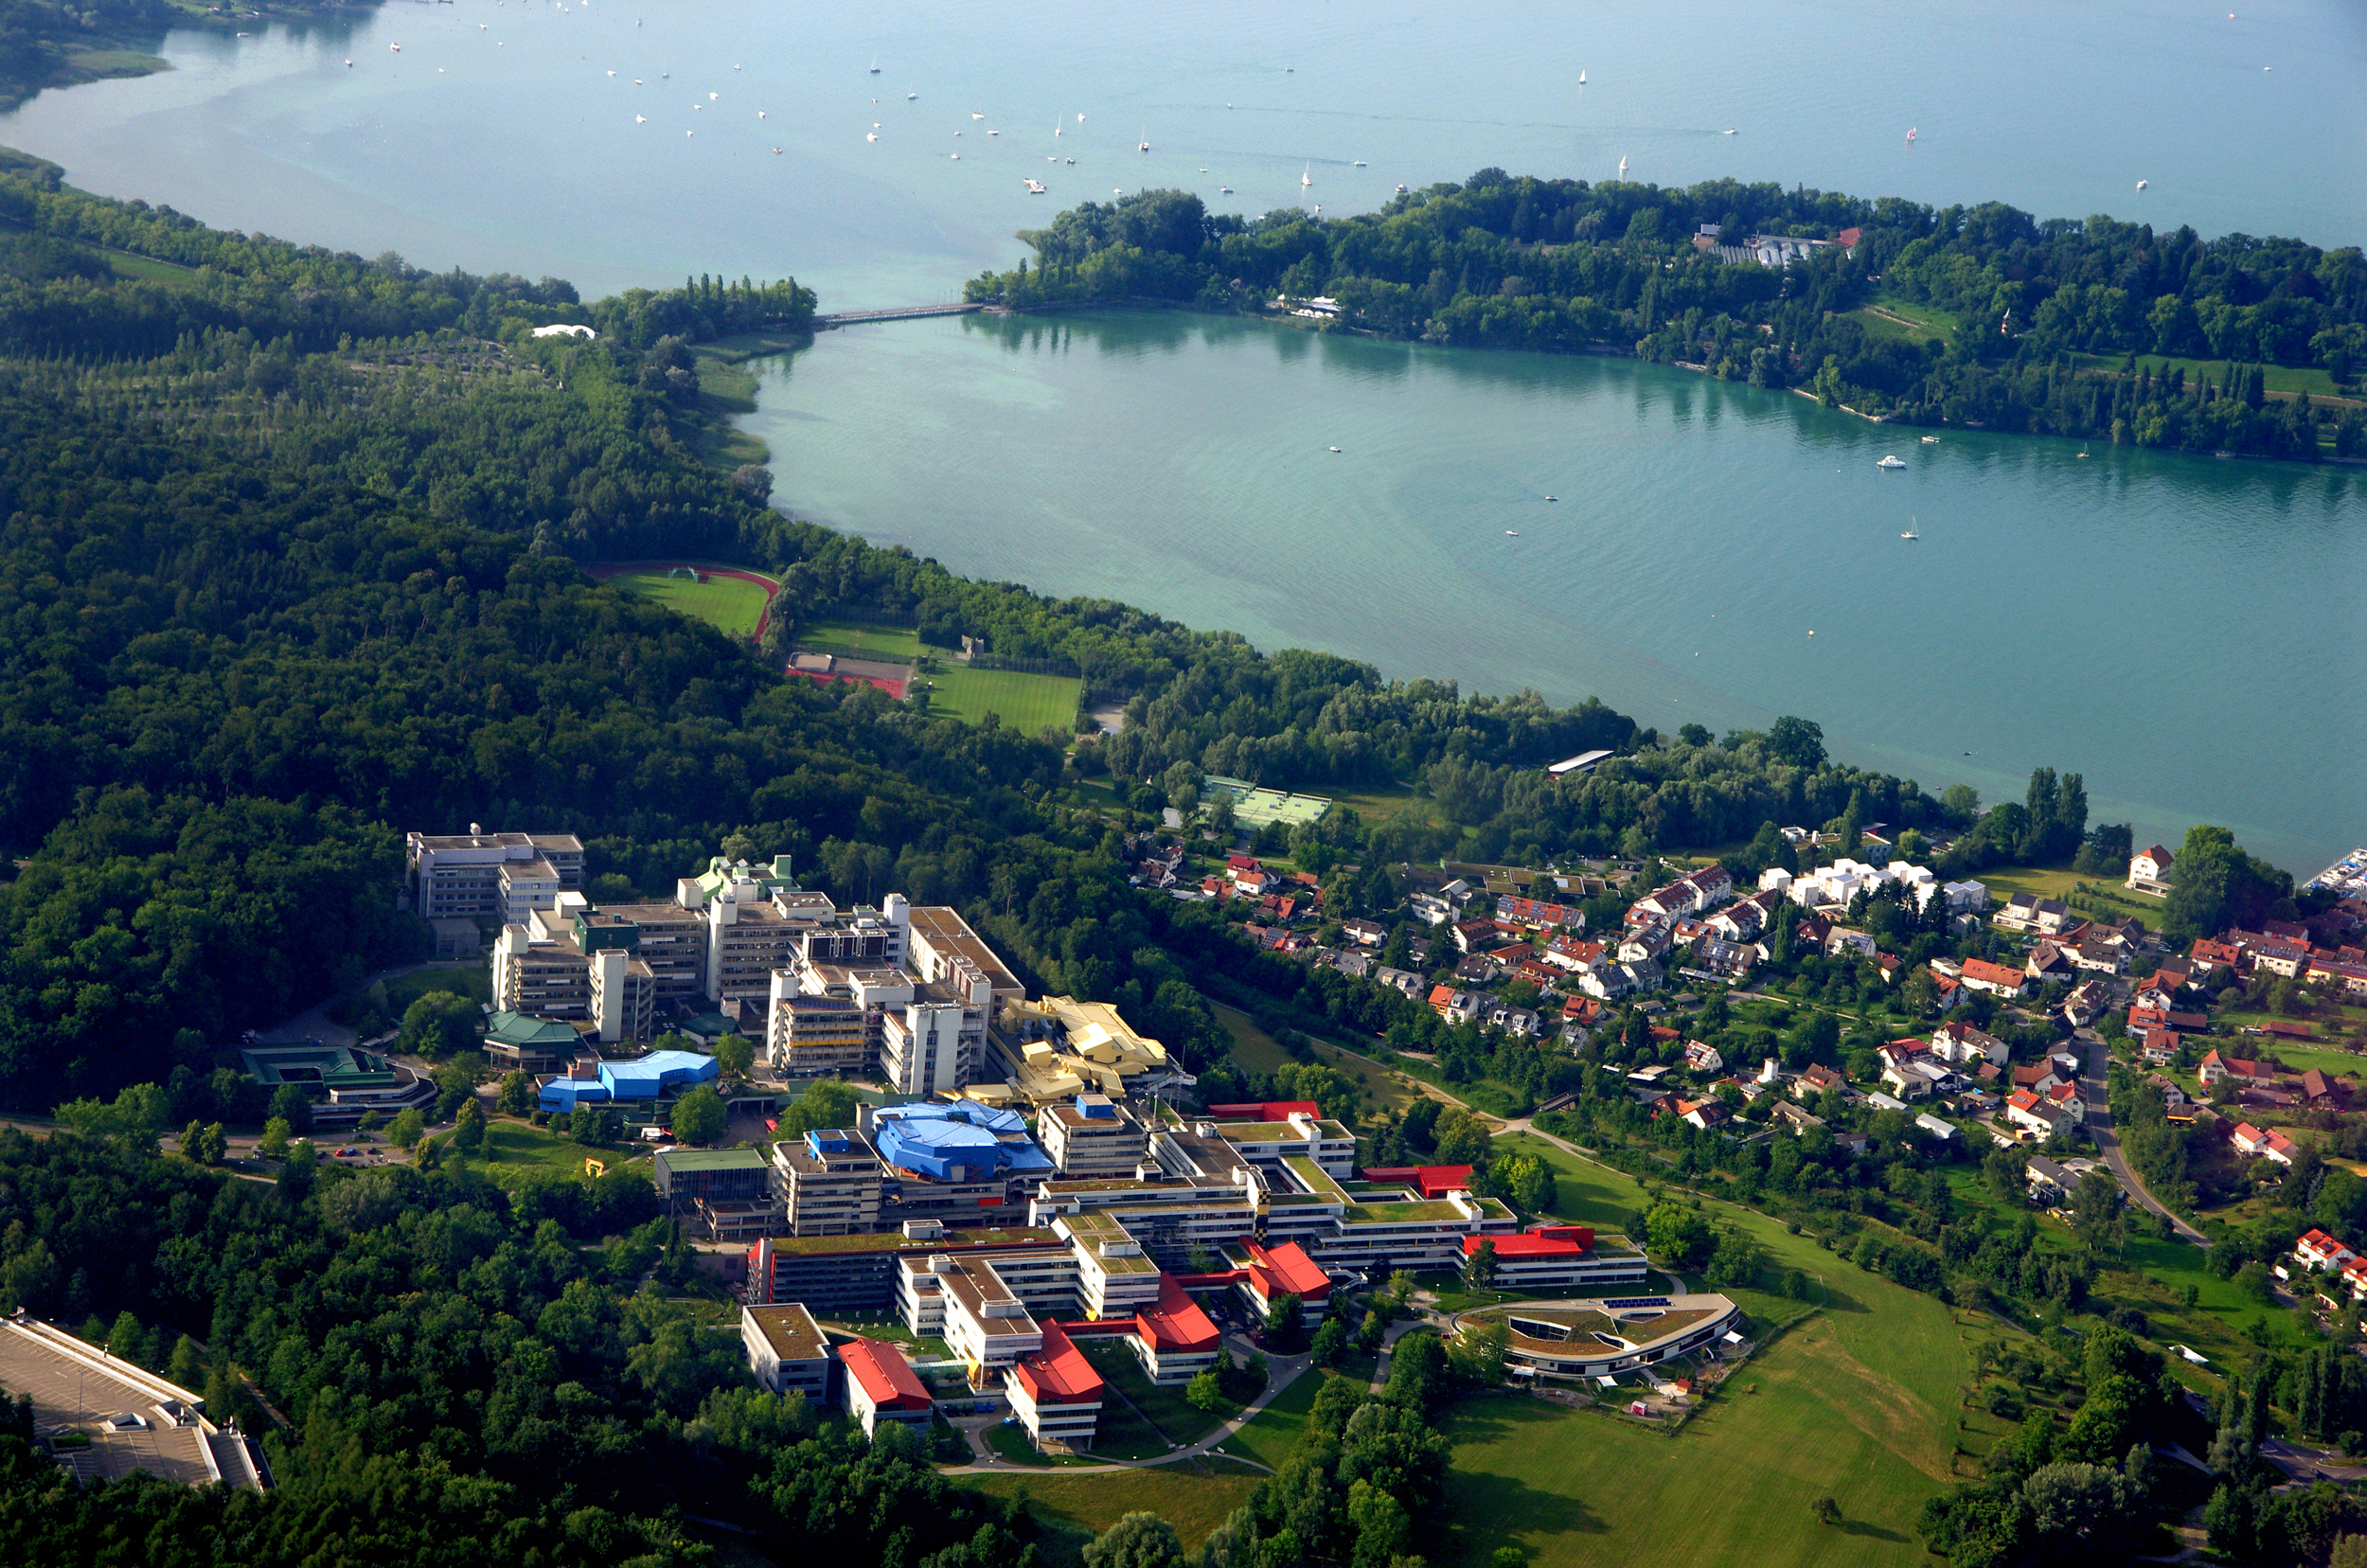 Luftaufnahme von der Universität Konstanz und der Insel Mainau. Copyright: Universität Konstanz